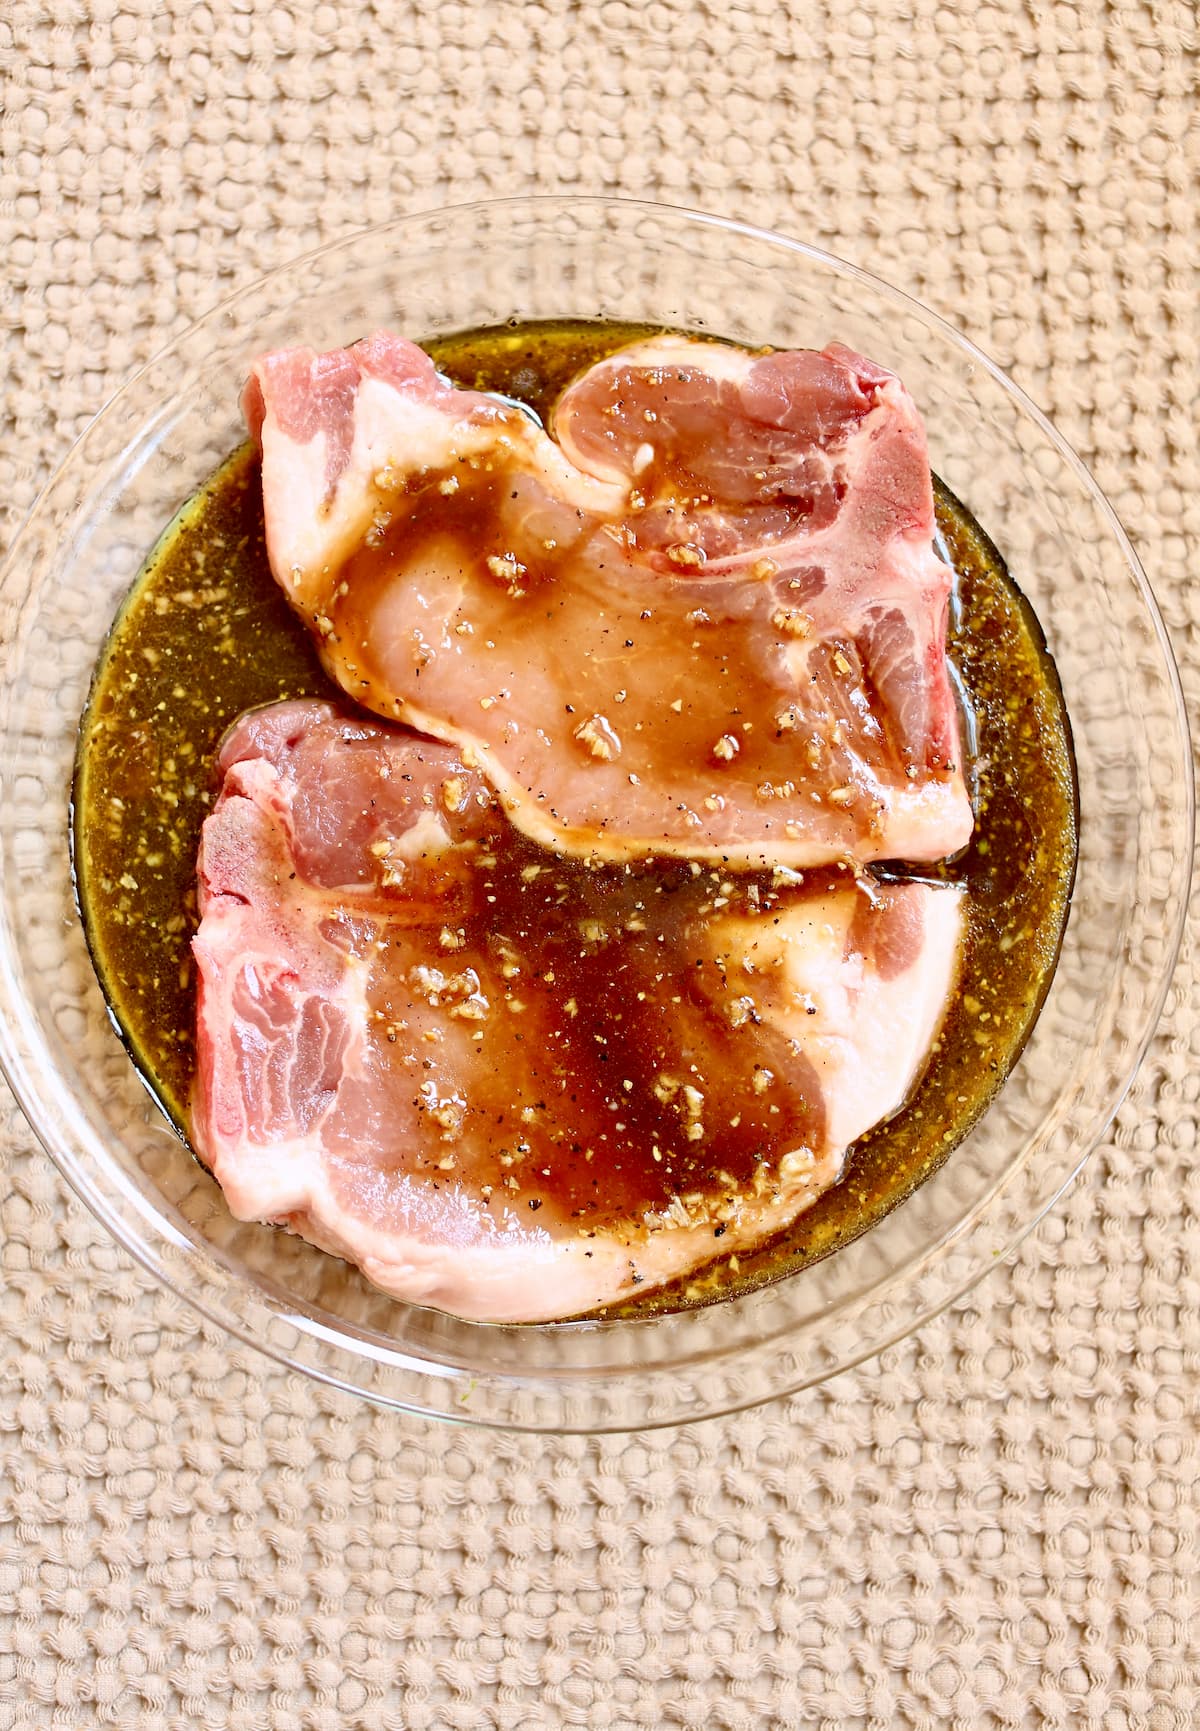 a pork chop sitting in a brown sugar marinade.